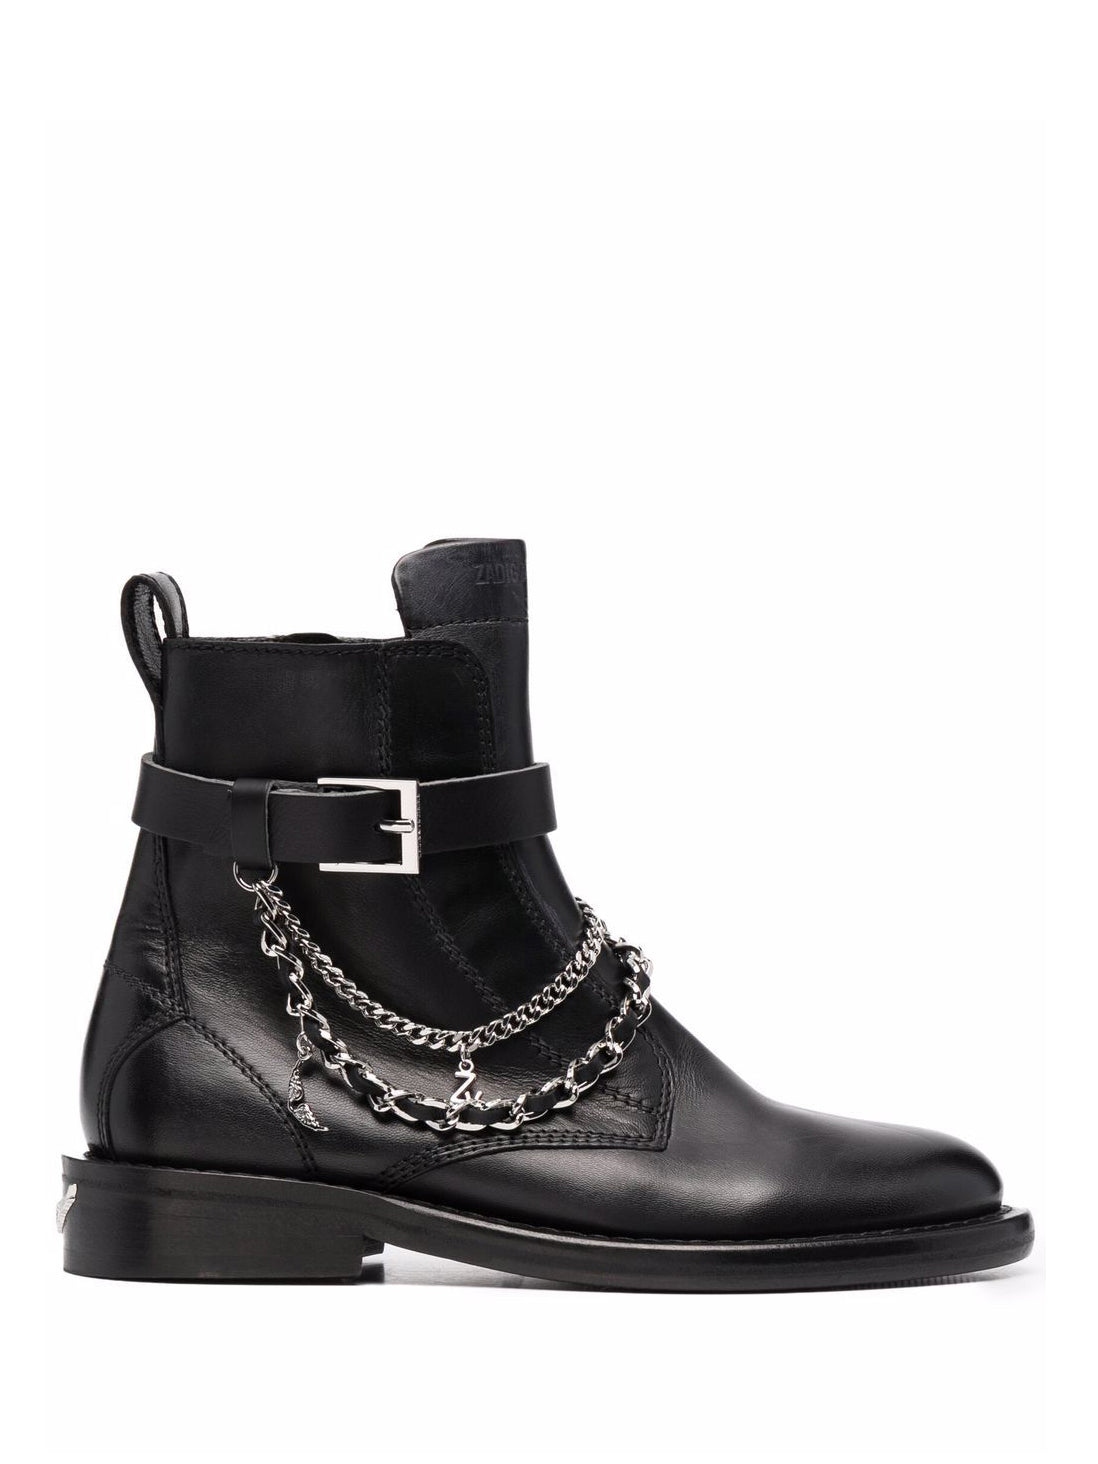 ZADIG & VOLTAIRE: Laureen high silk lambskin boots, black 